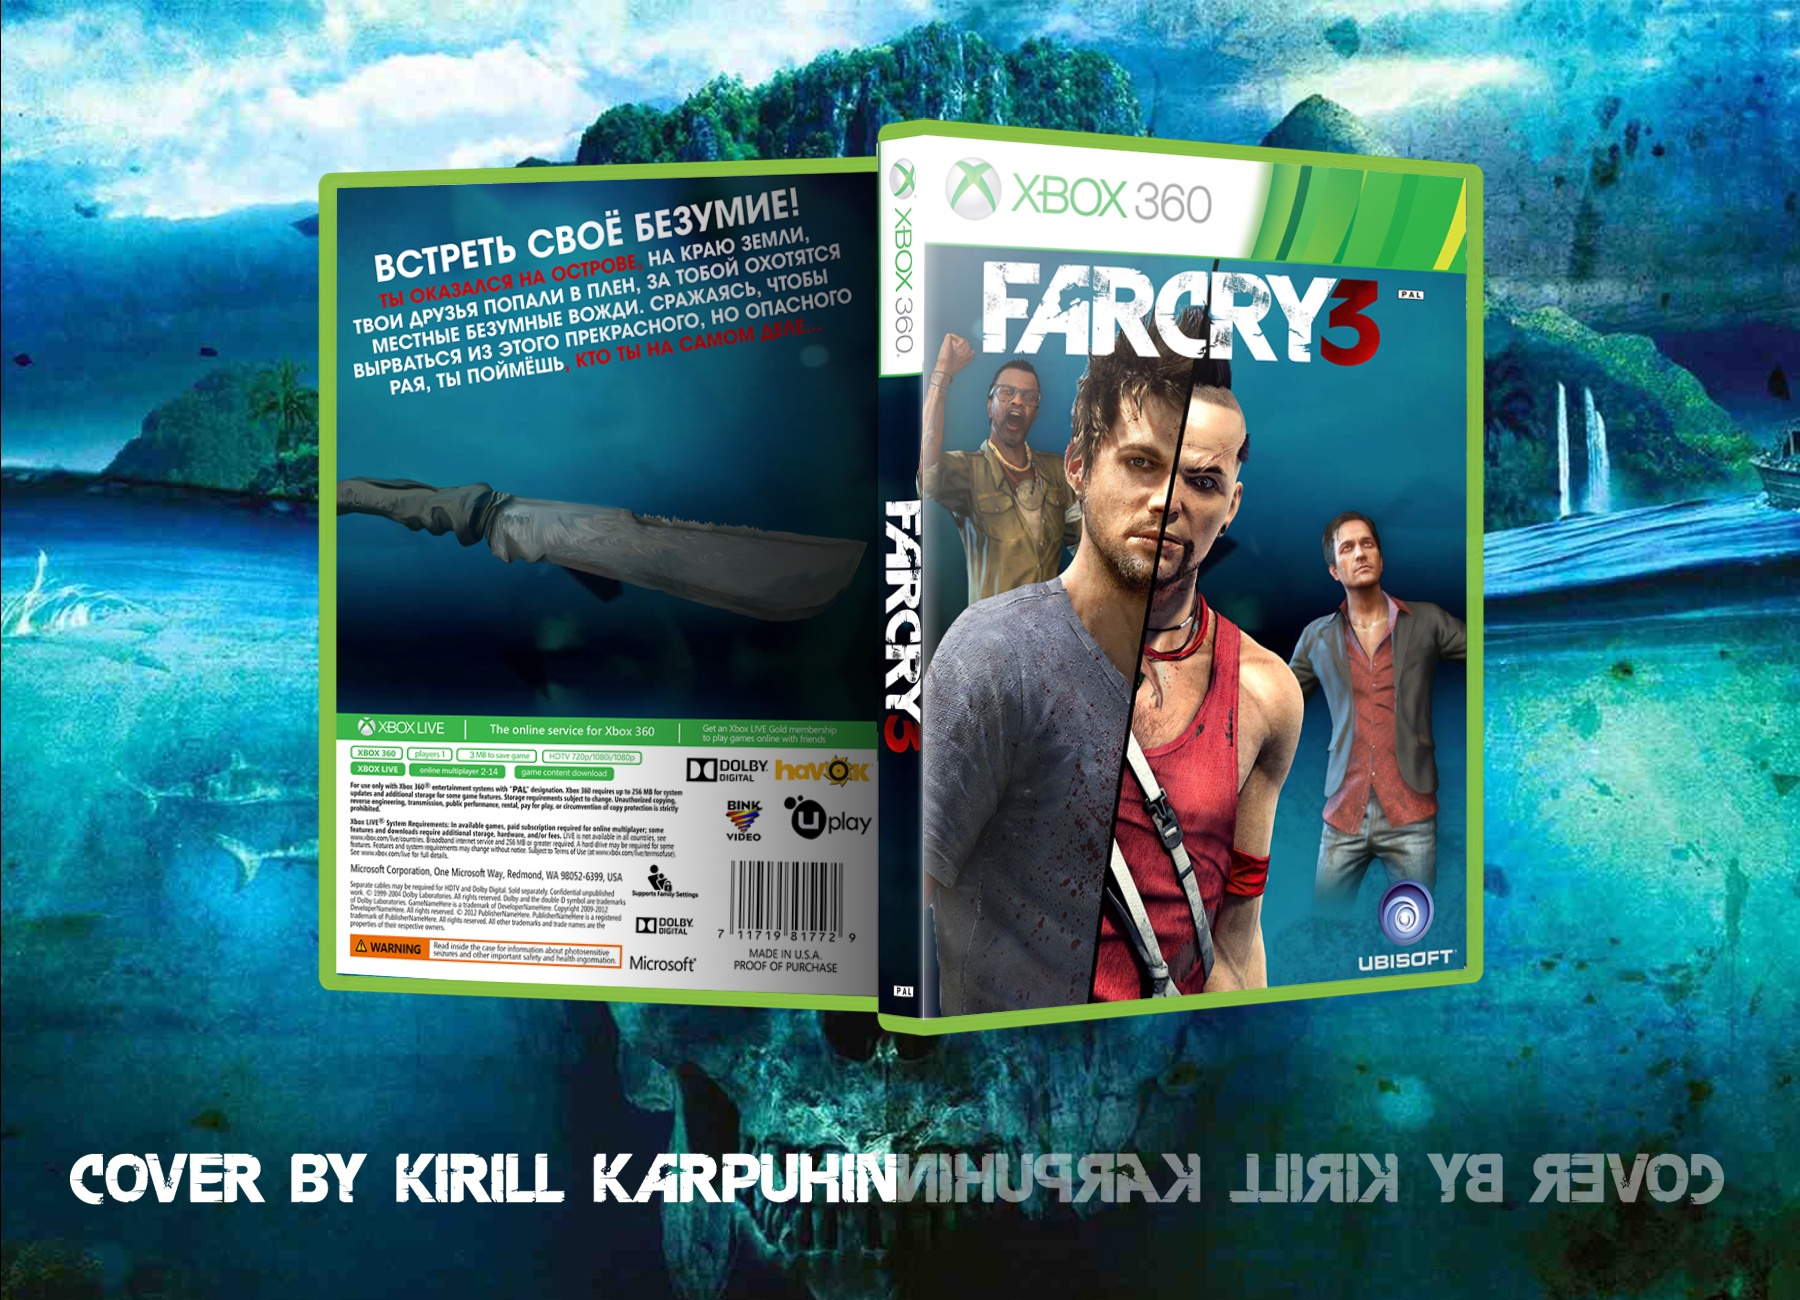 FarCry3 box cover